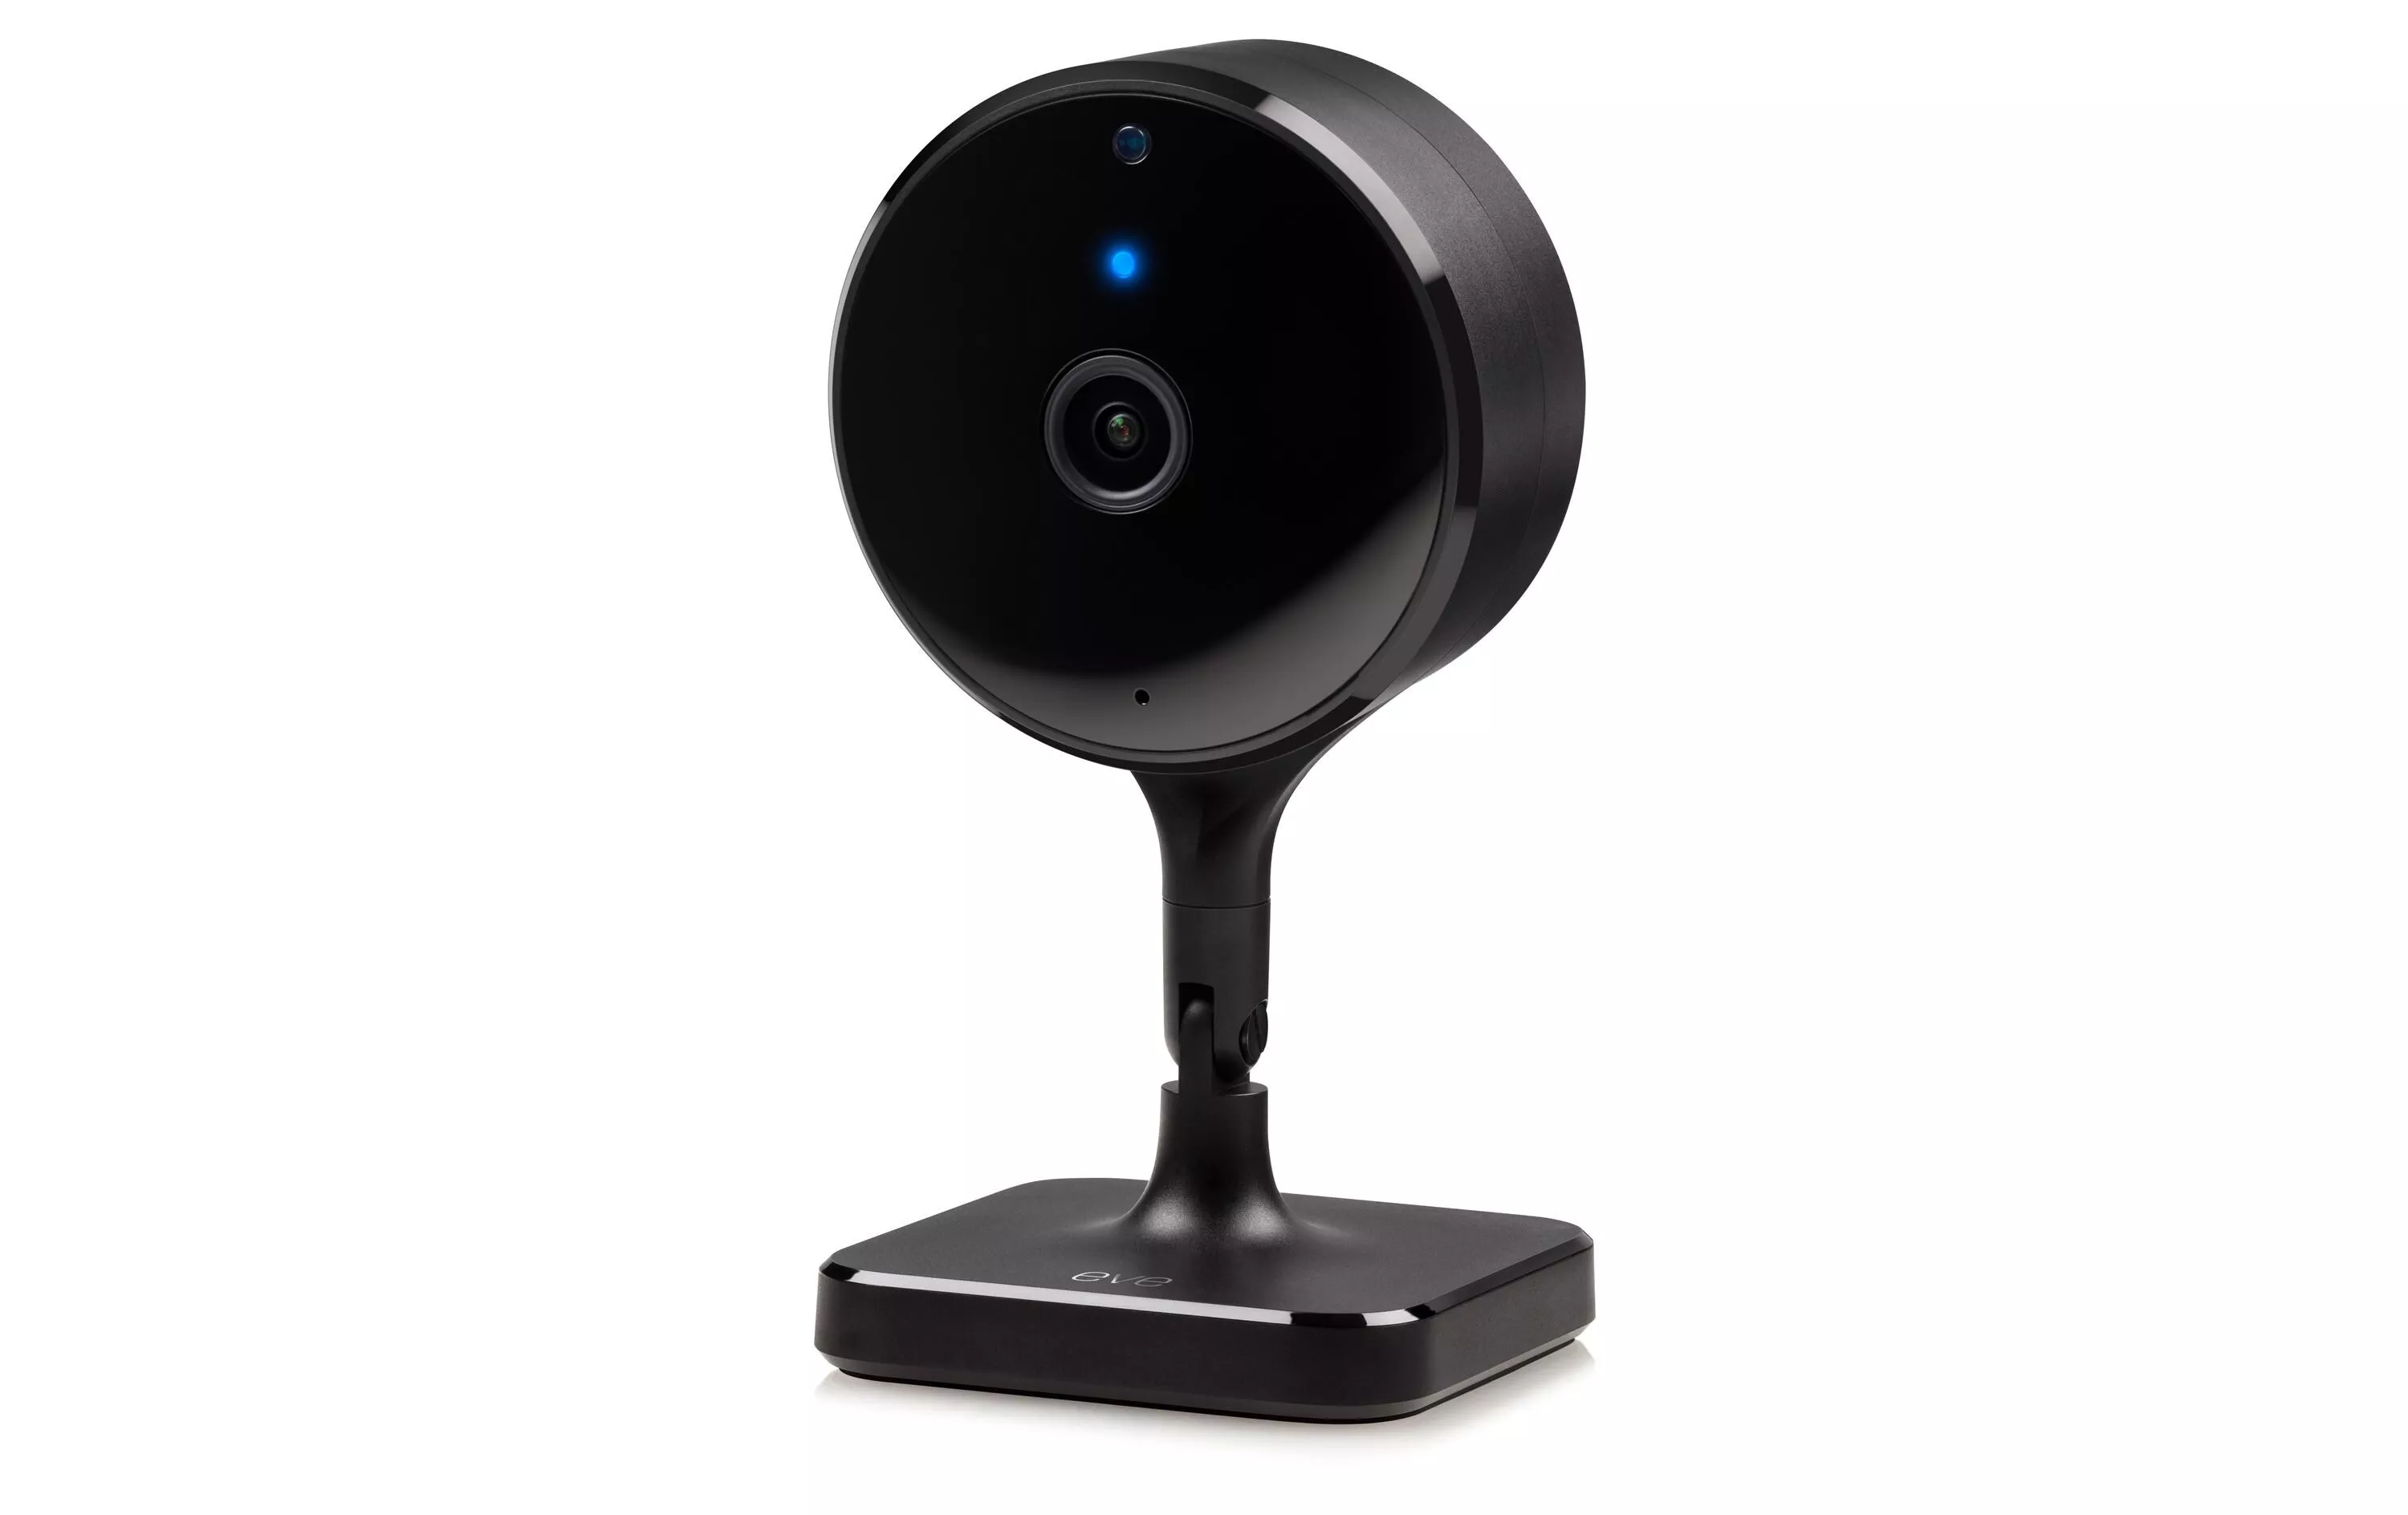 Netzwerkkamera Eve Cam 1080p / 24 fps, 150°, Nachtsicht